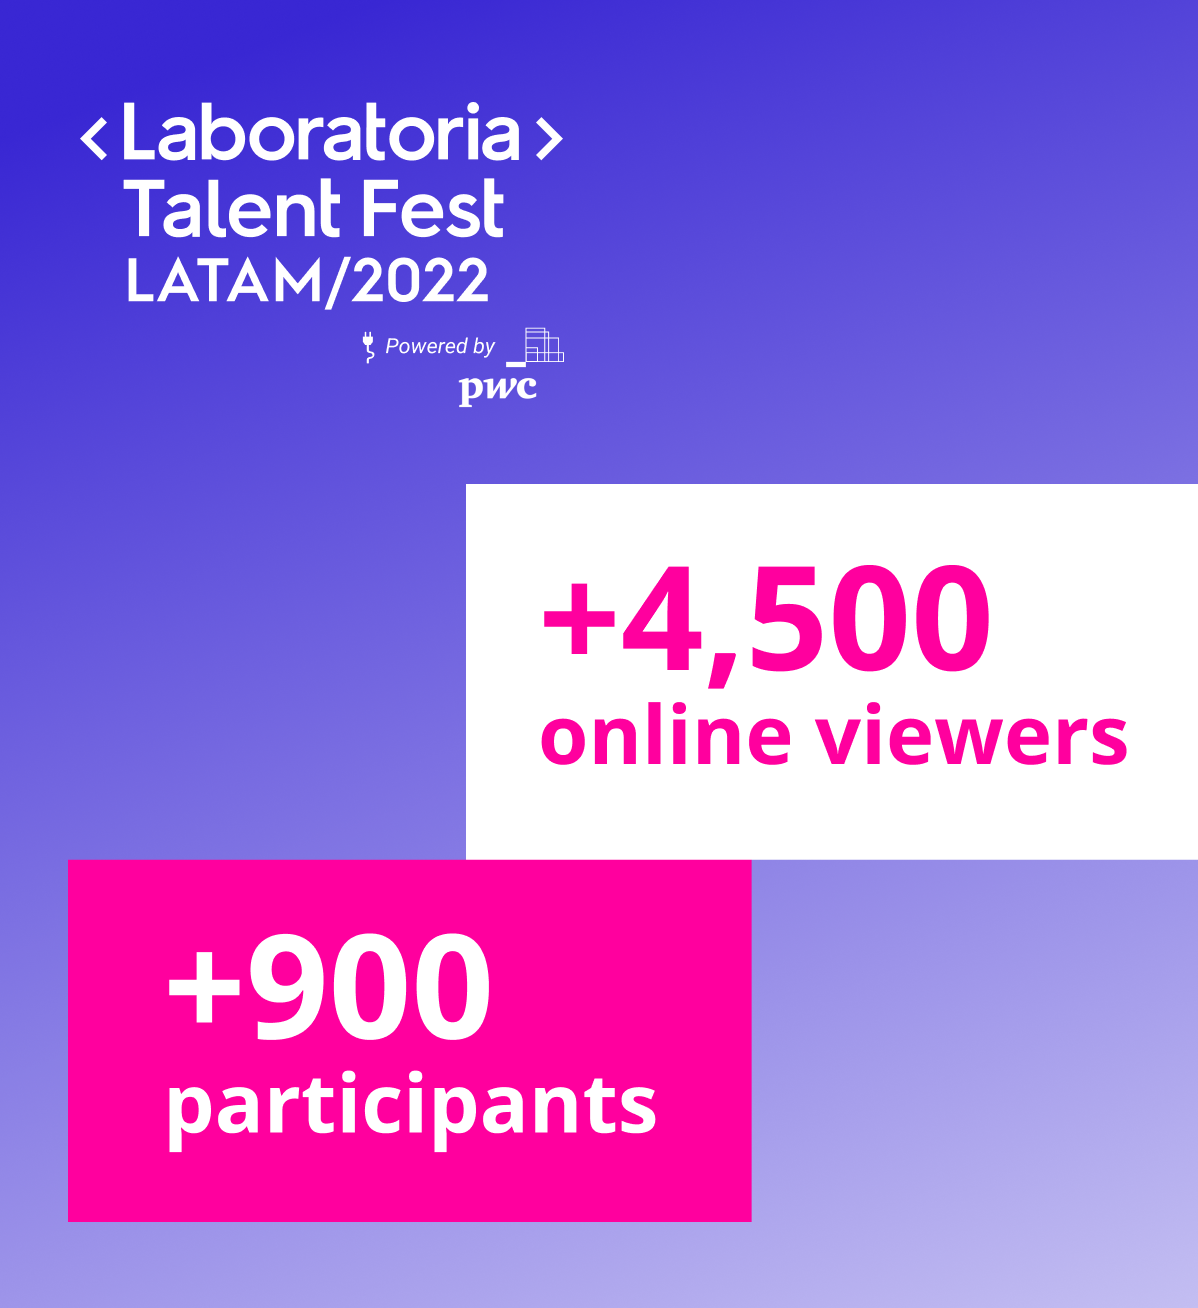 Talent Fest de Laboratoria 2022. Clic para conocer más.